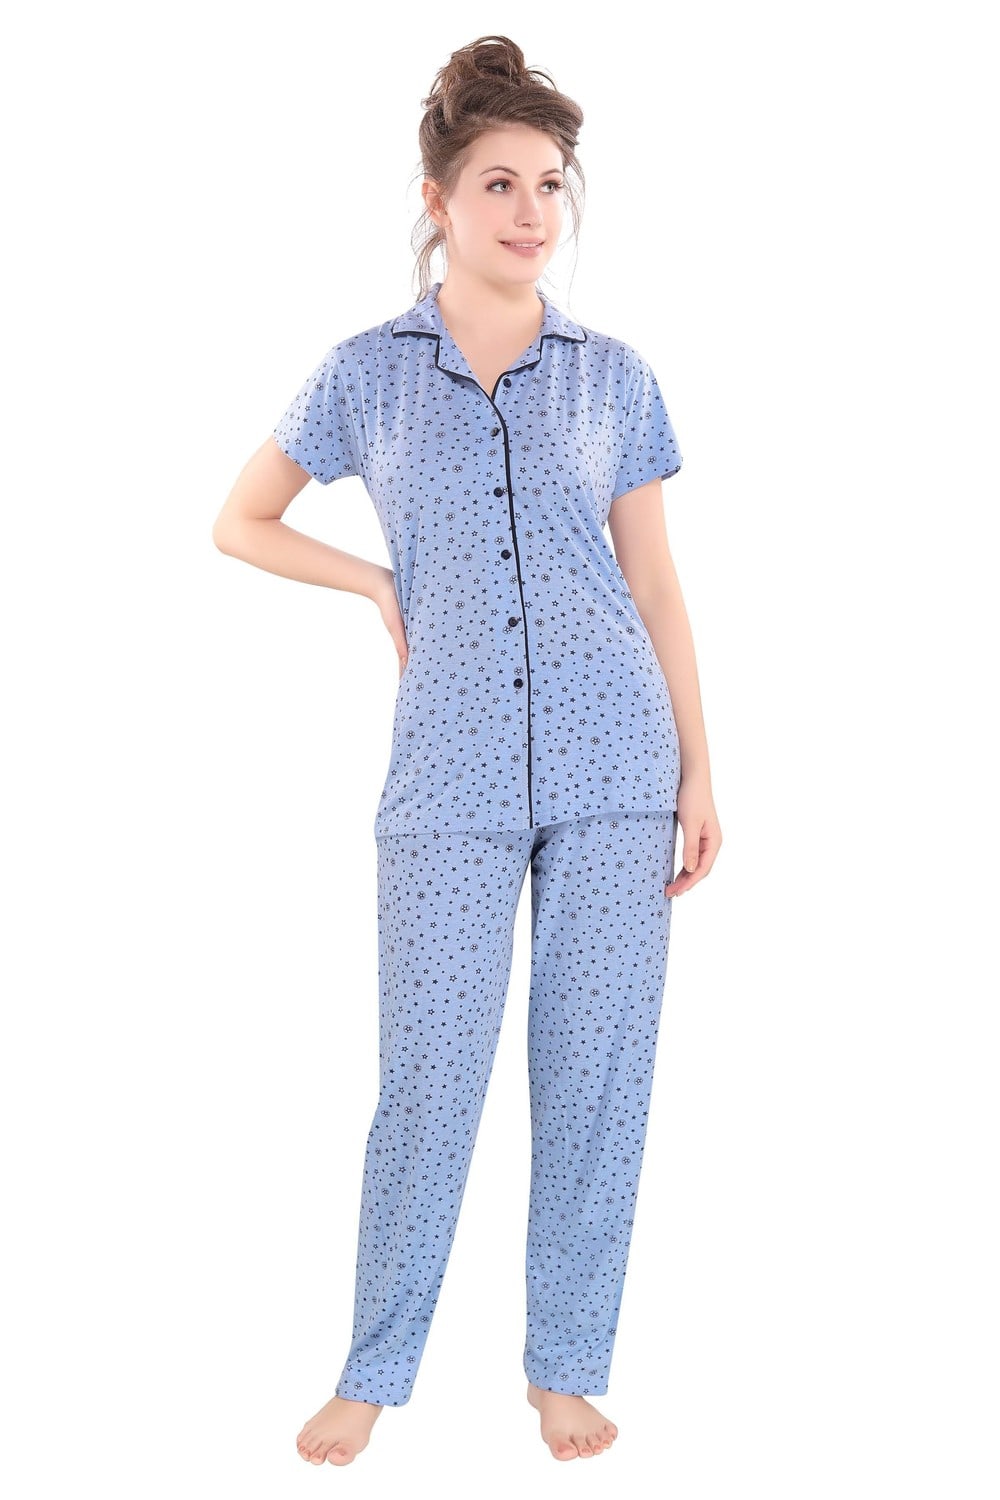 Pierre Donna Women's Cotton Pajama set With Pants - Women Sleepwear Blue Color AVL - Dealz Souq